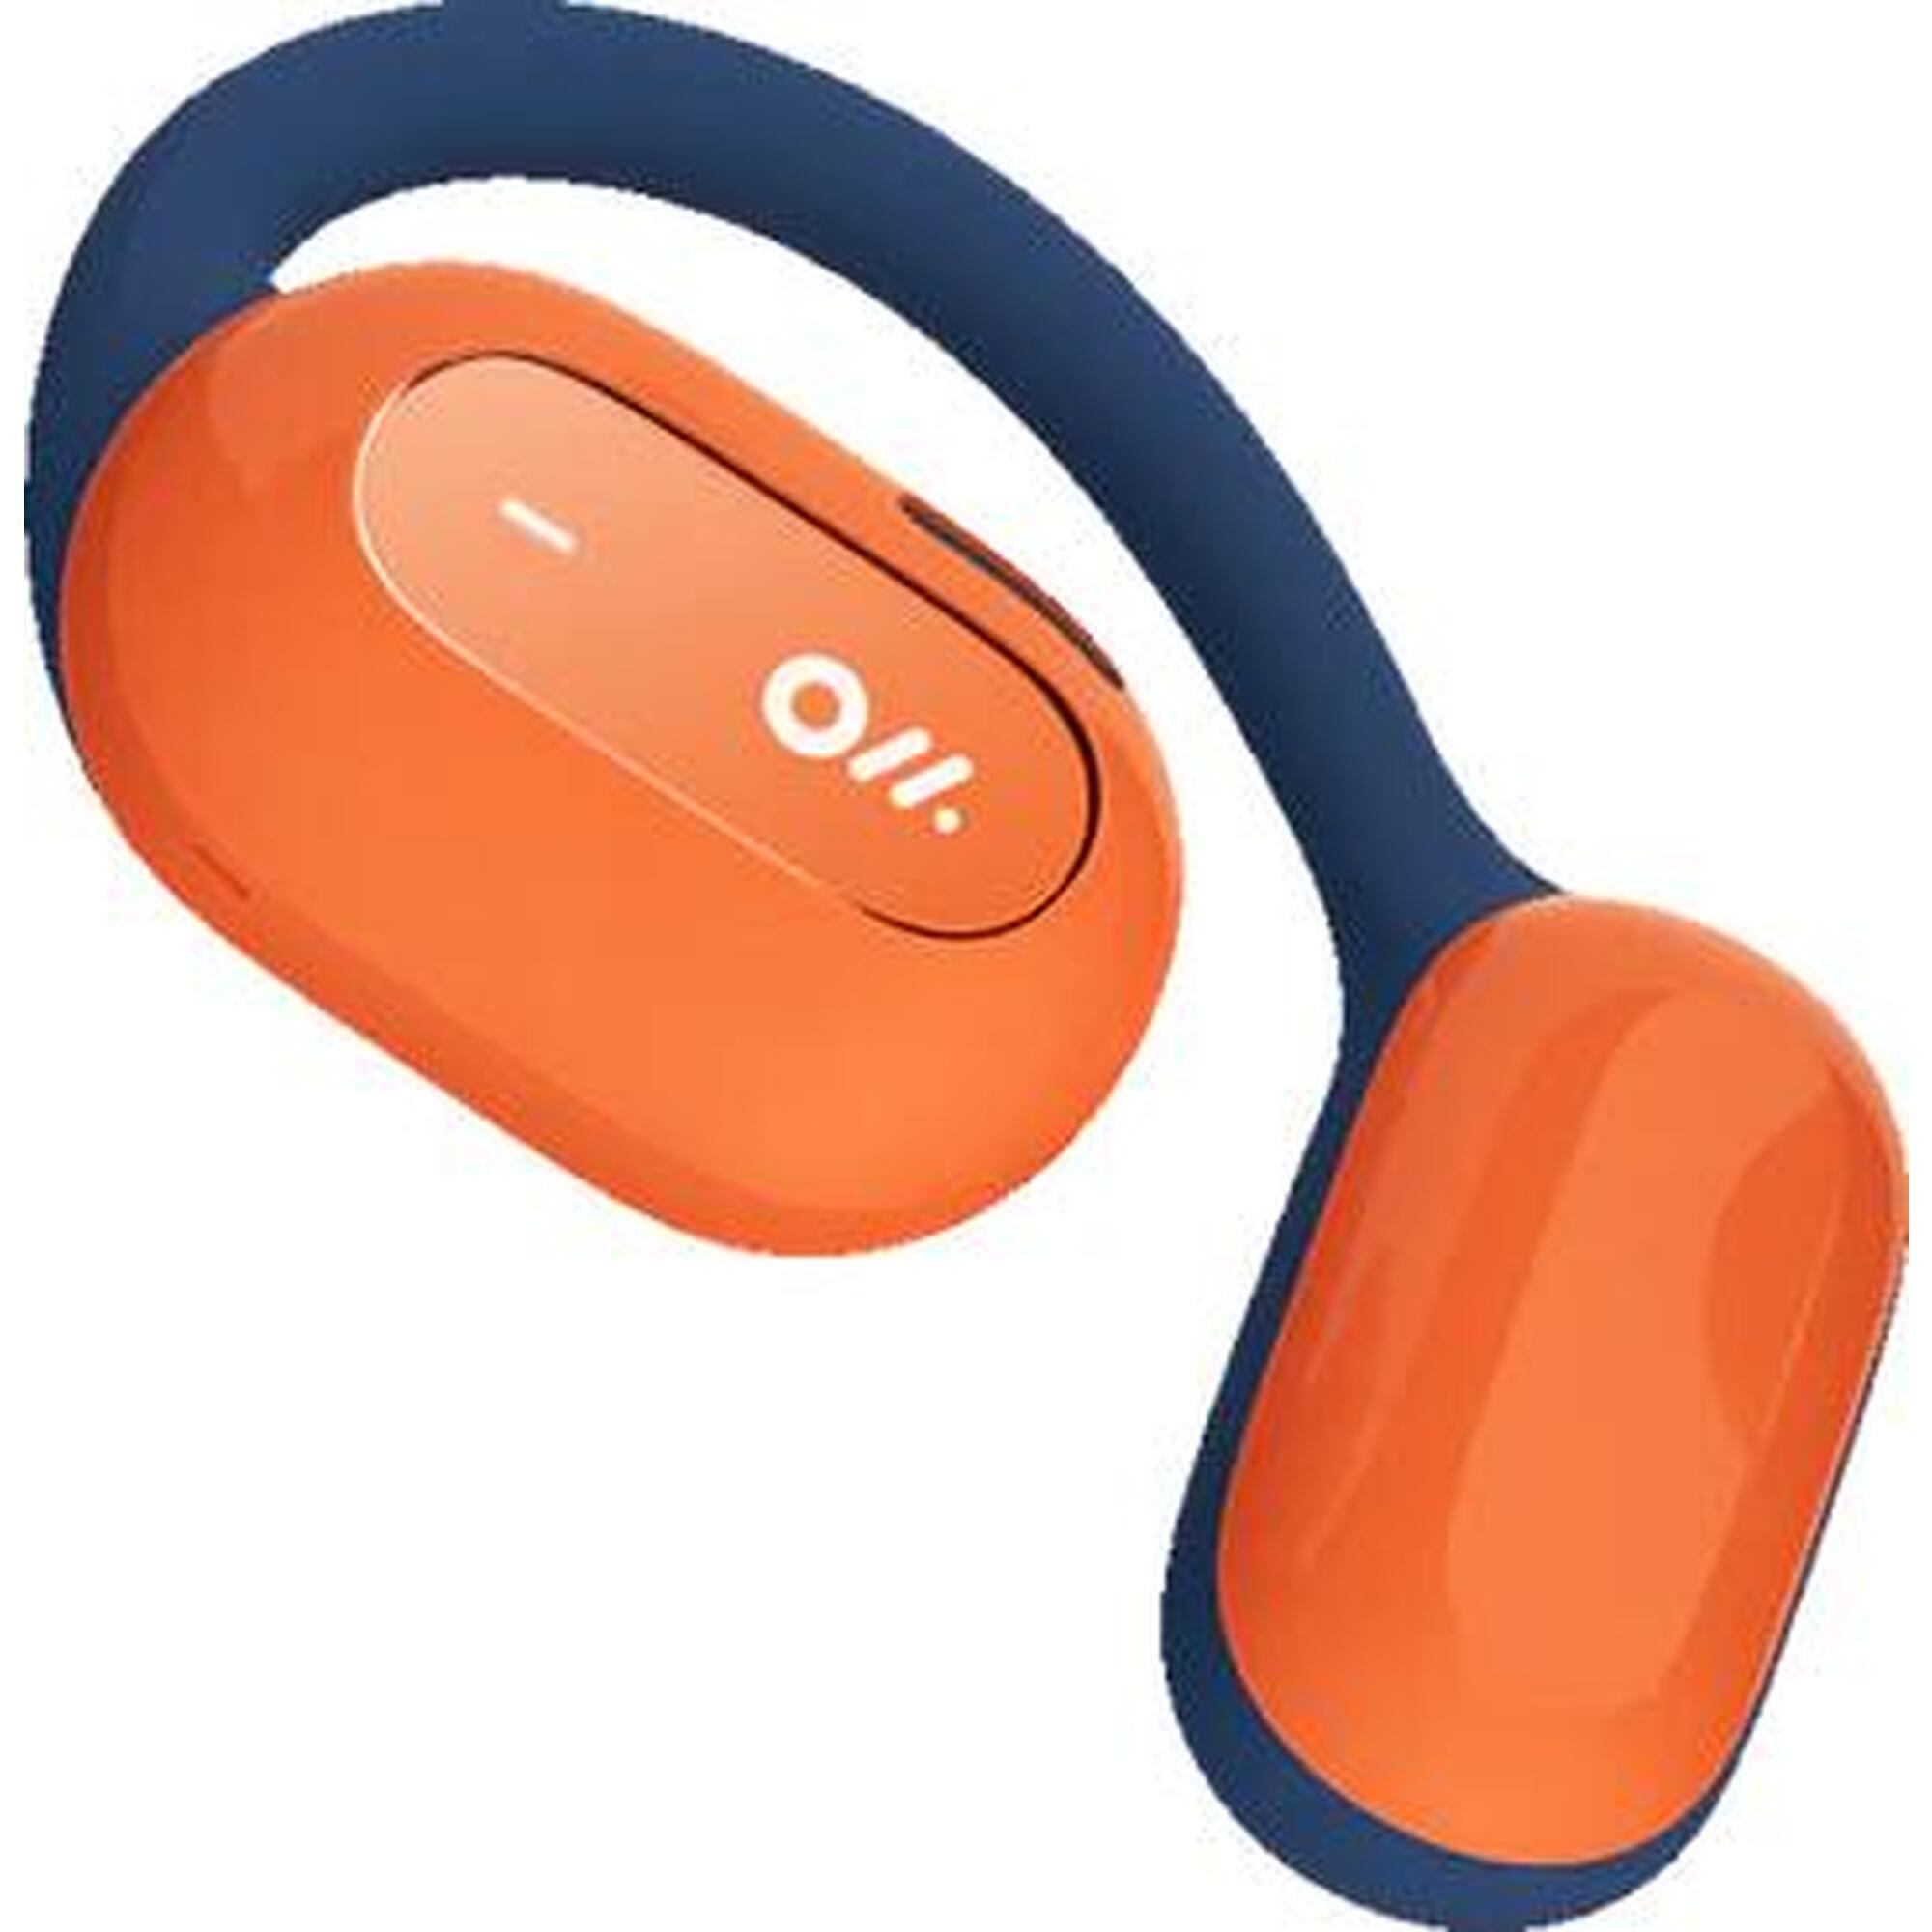 OWS2 開放式可穿戴立體聲藍芽耳機 - 星際藍